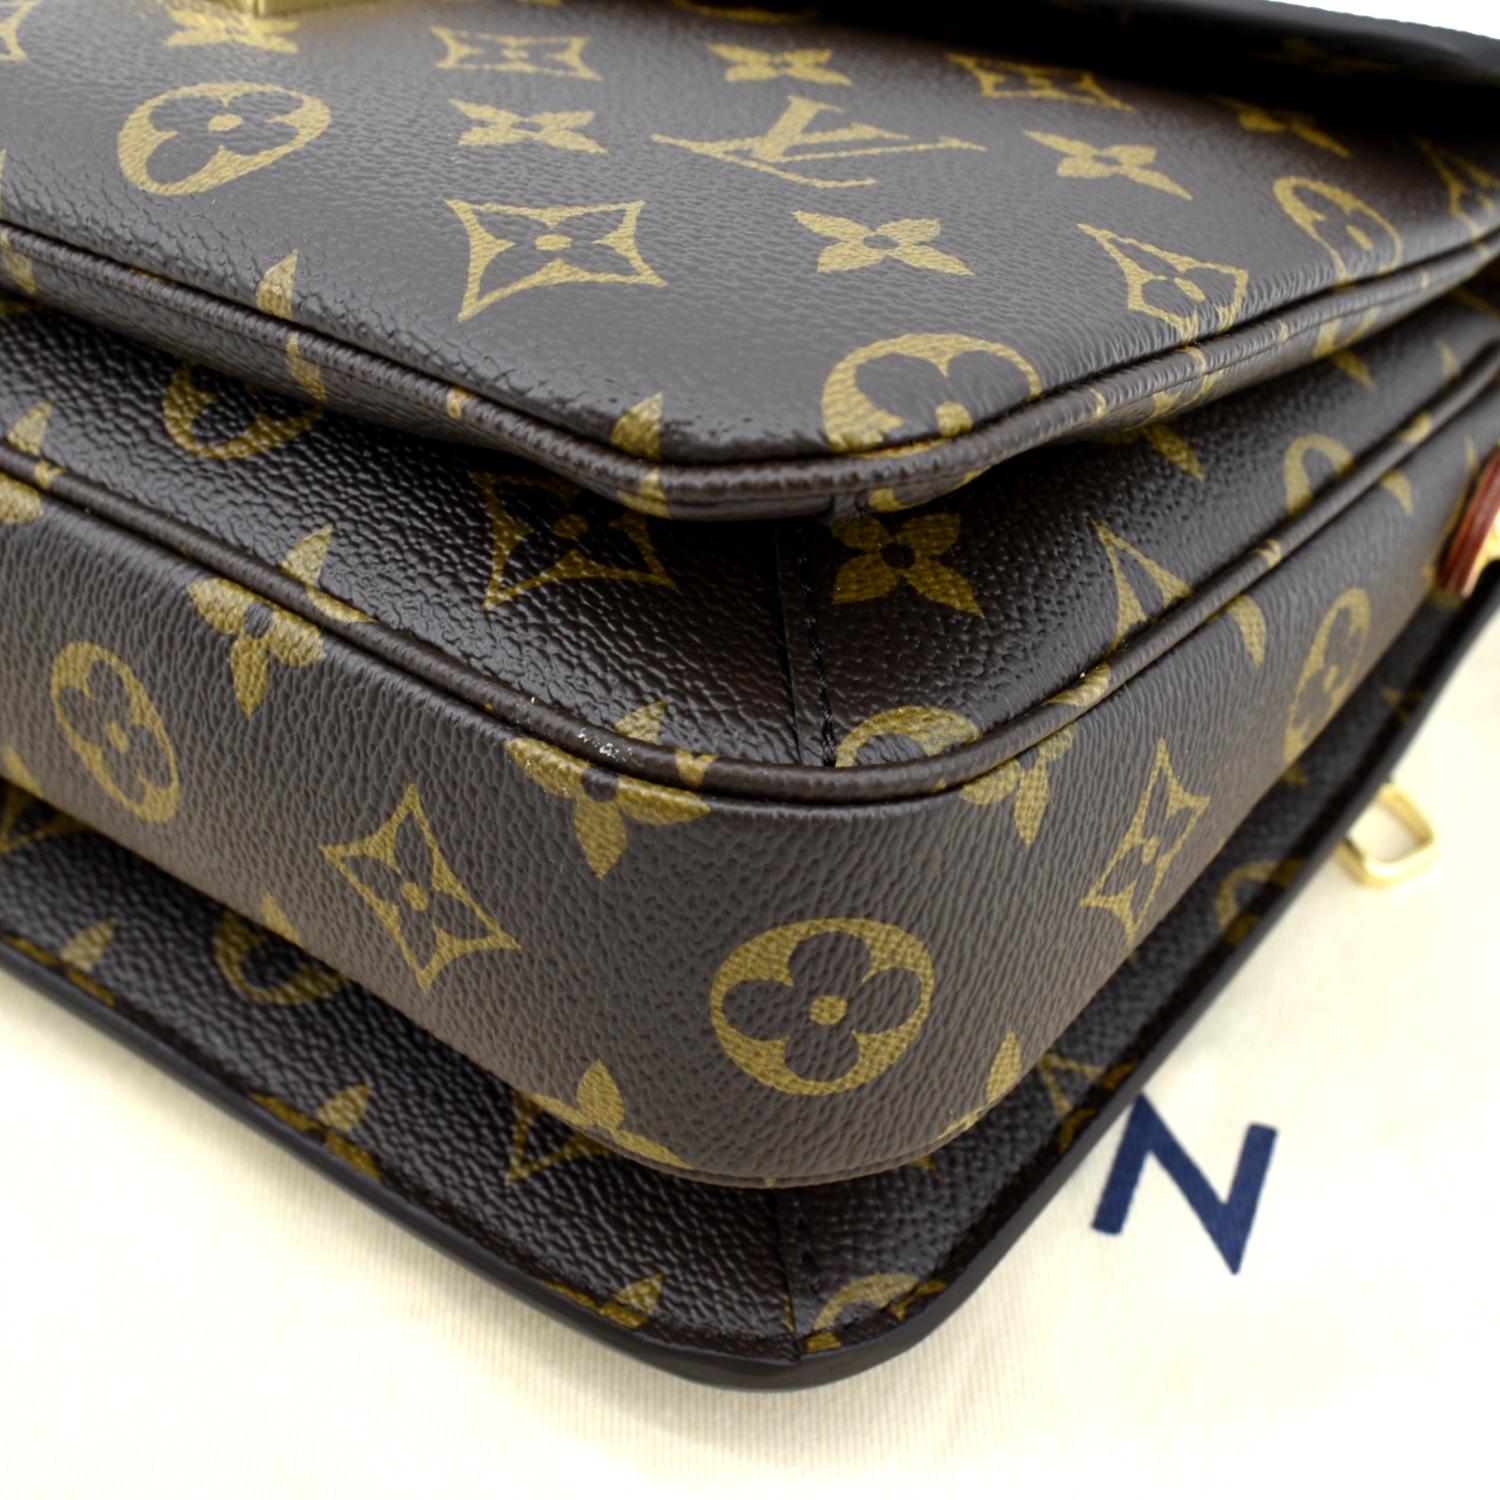 Louis Vuitton Pochette Metis 2018 Brown Monogram Canvas Shoulder Bag -  MyDesignerly